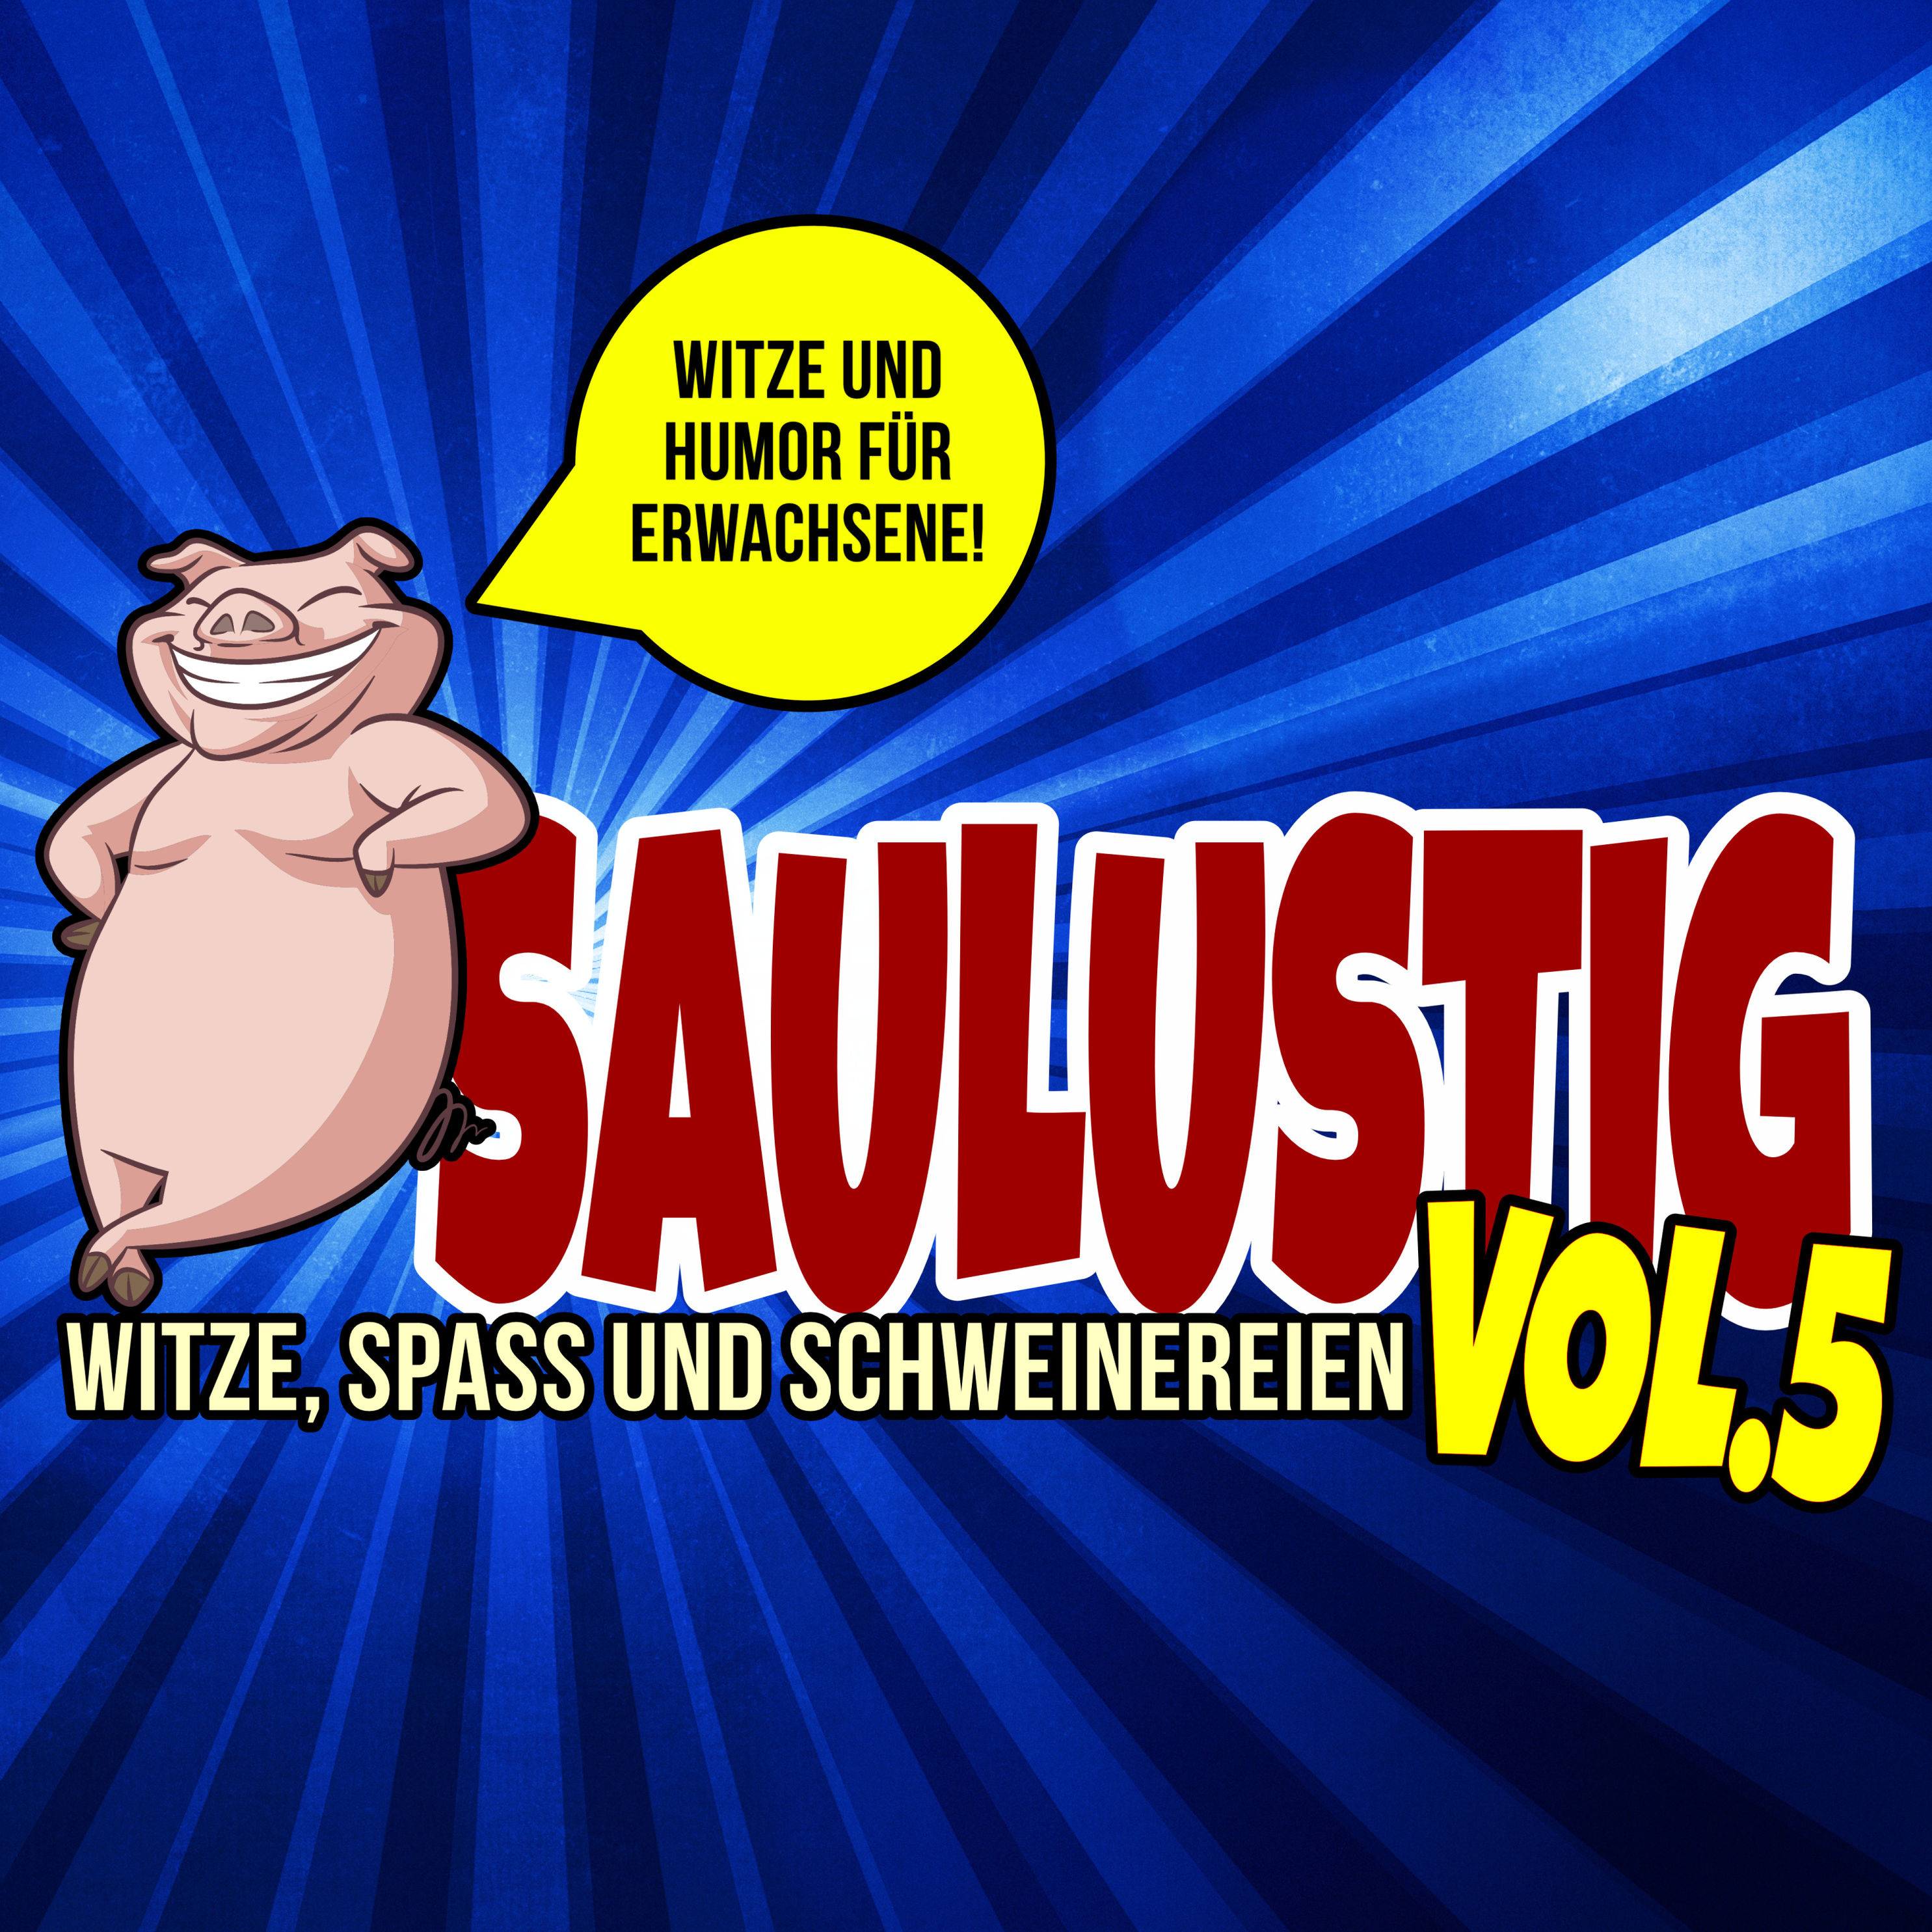 Saulustig - Witze, Spass und Schweinereien, Vol. 5 Hörbuch Download